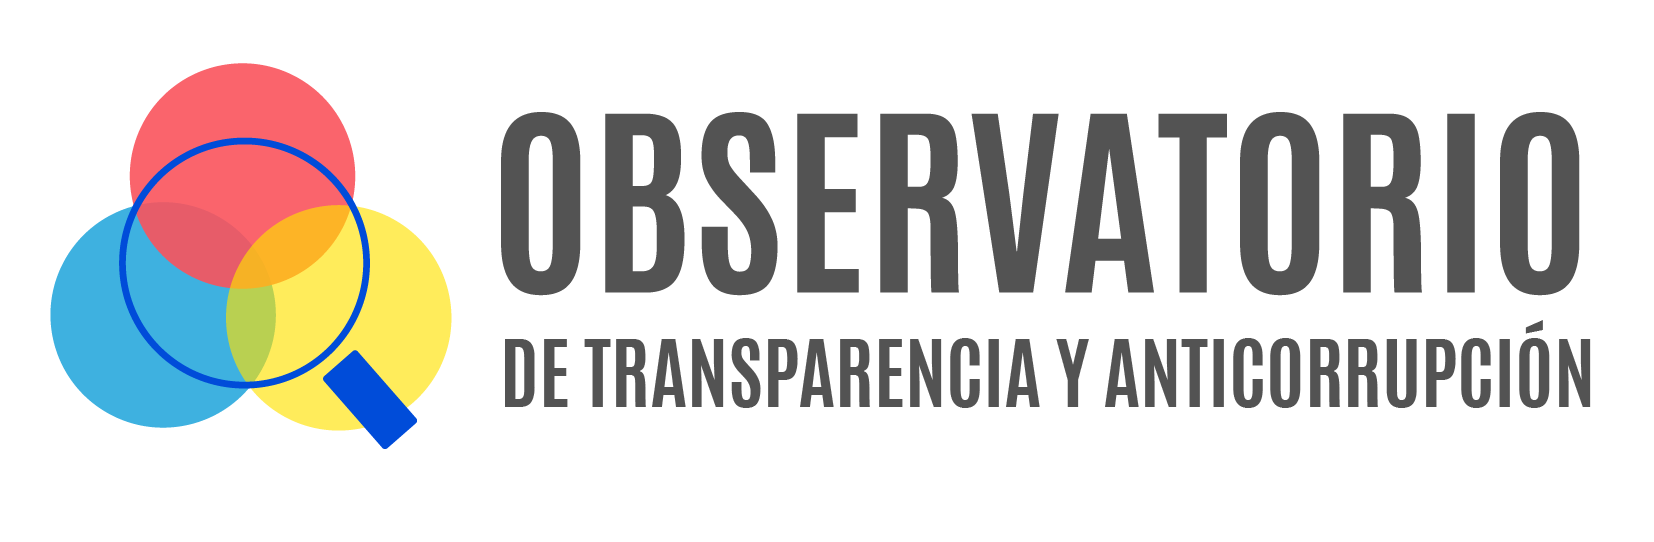 Observatorio de transparencia y anticorrupción 